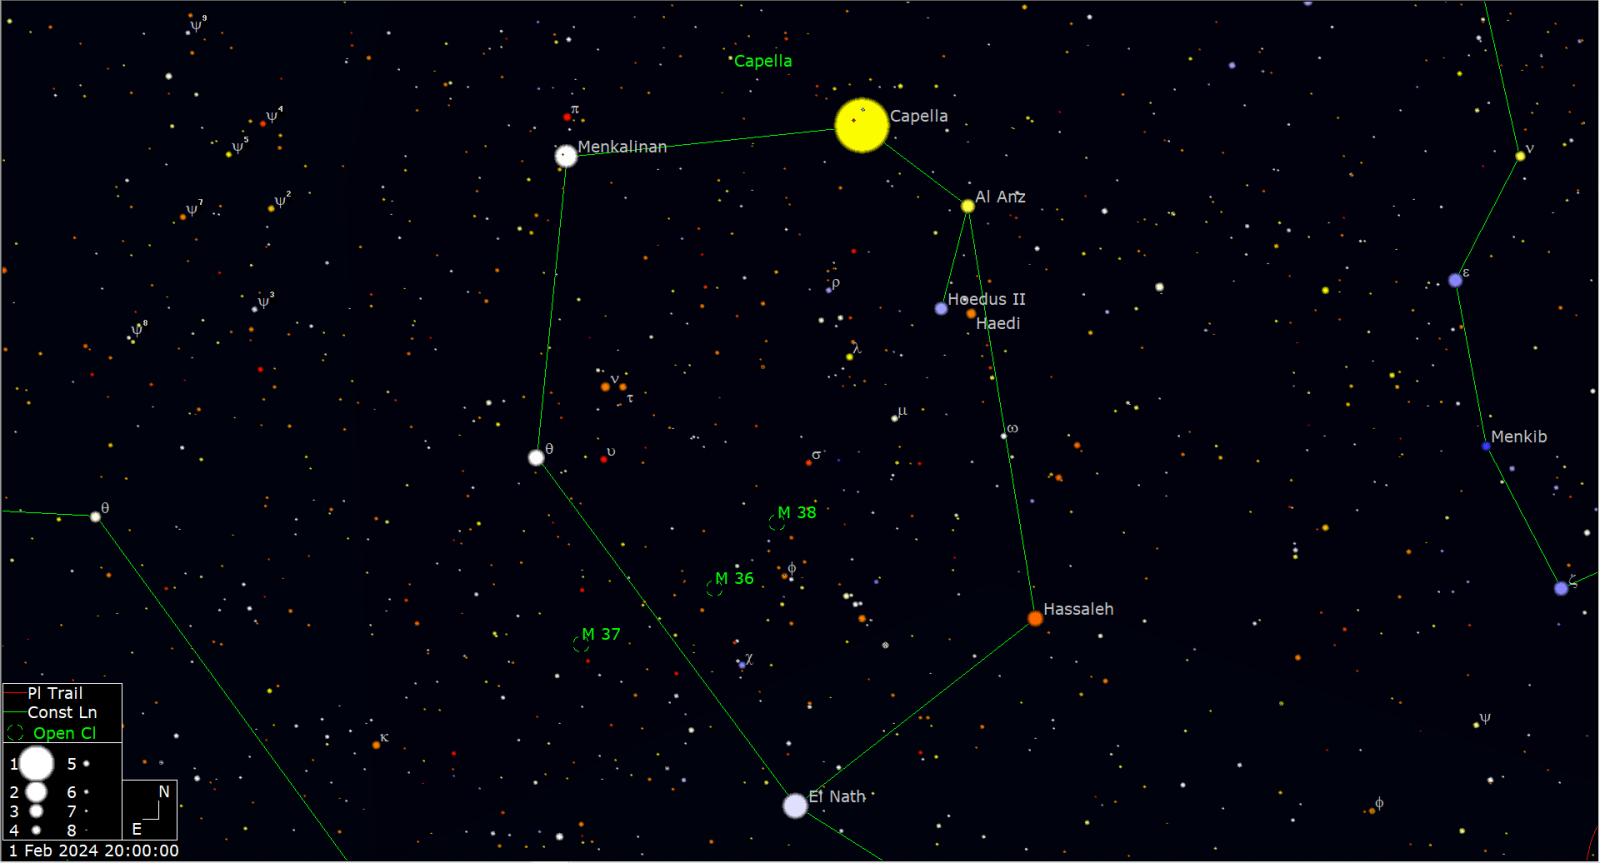 Het sterrenbeeld Auriga (Voerman) met de drie fraaie open sterrenhopen op een rij